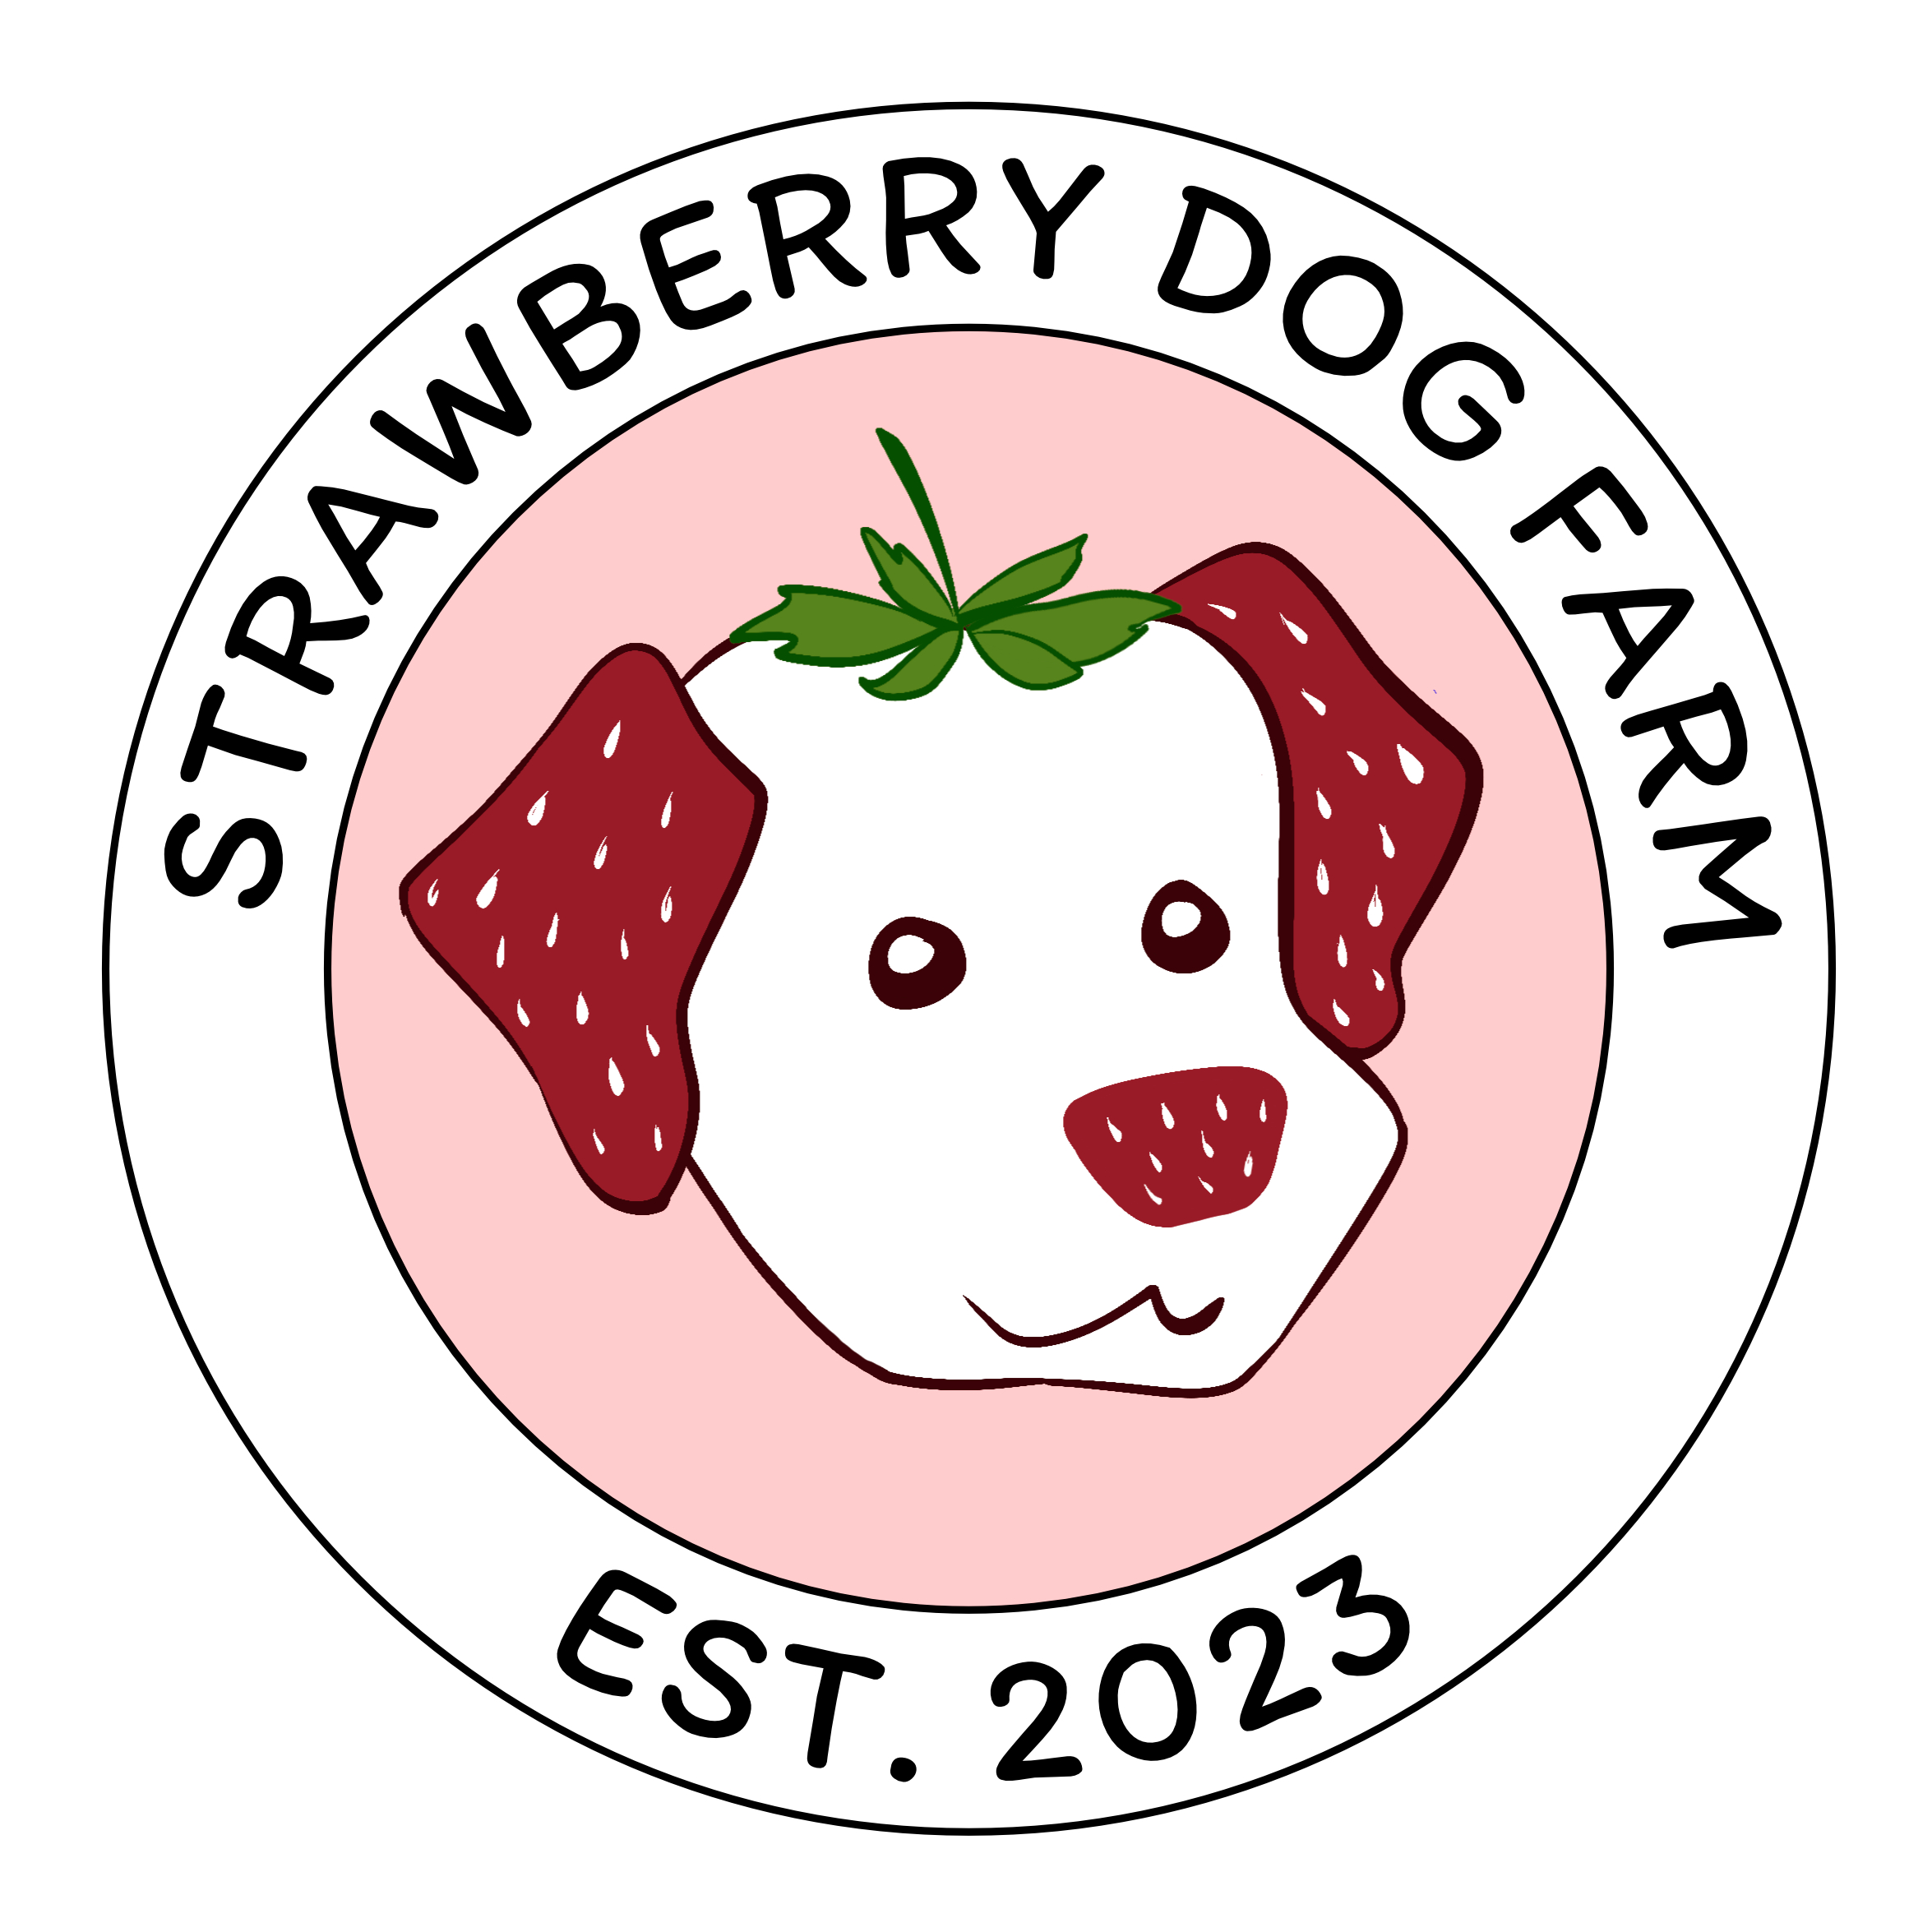 Strawberry Dog Farm